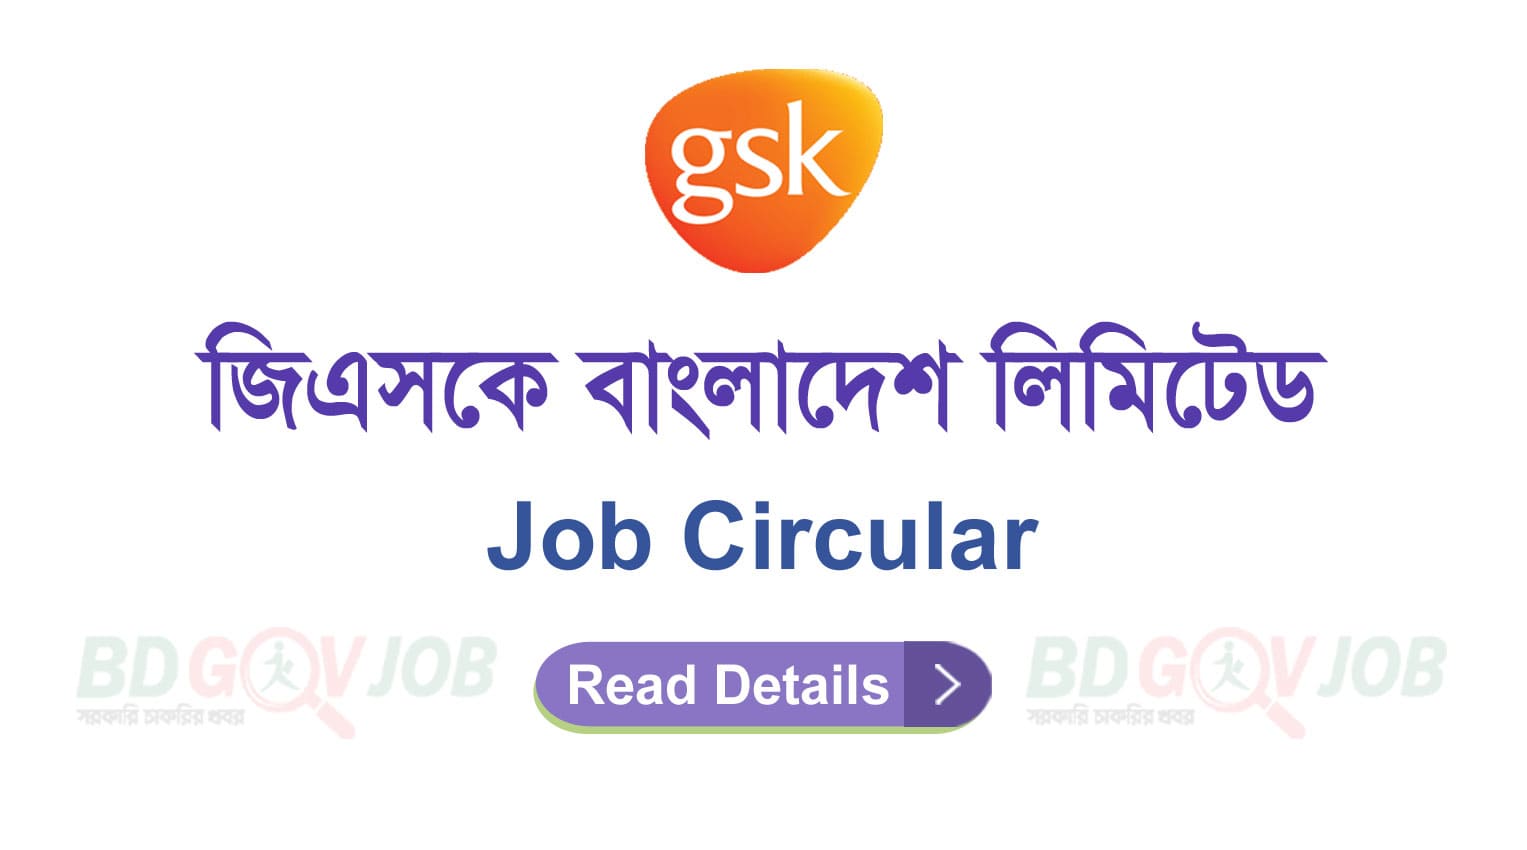 GSK Bangladesh Job Circular